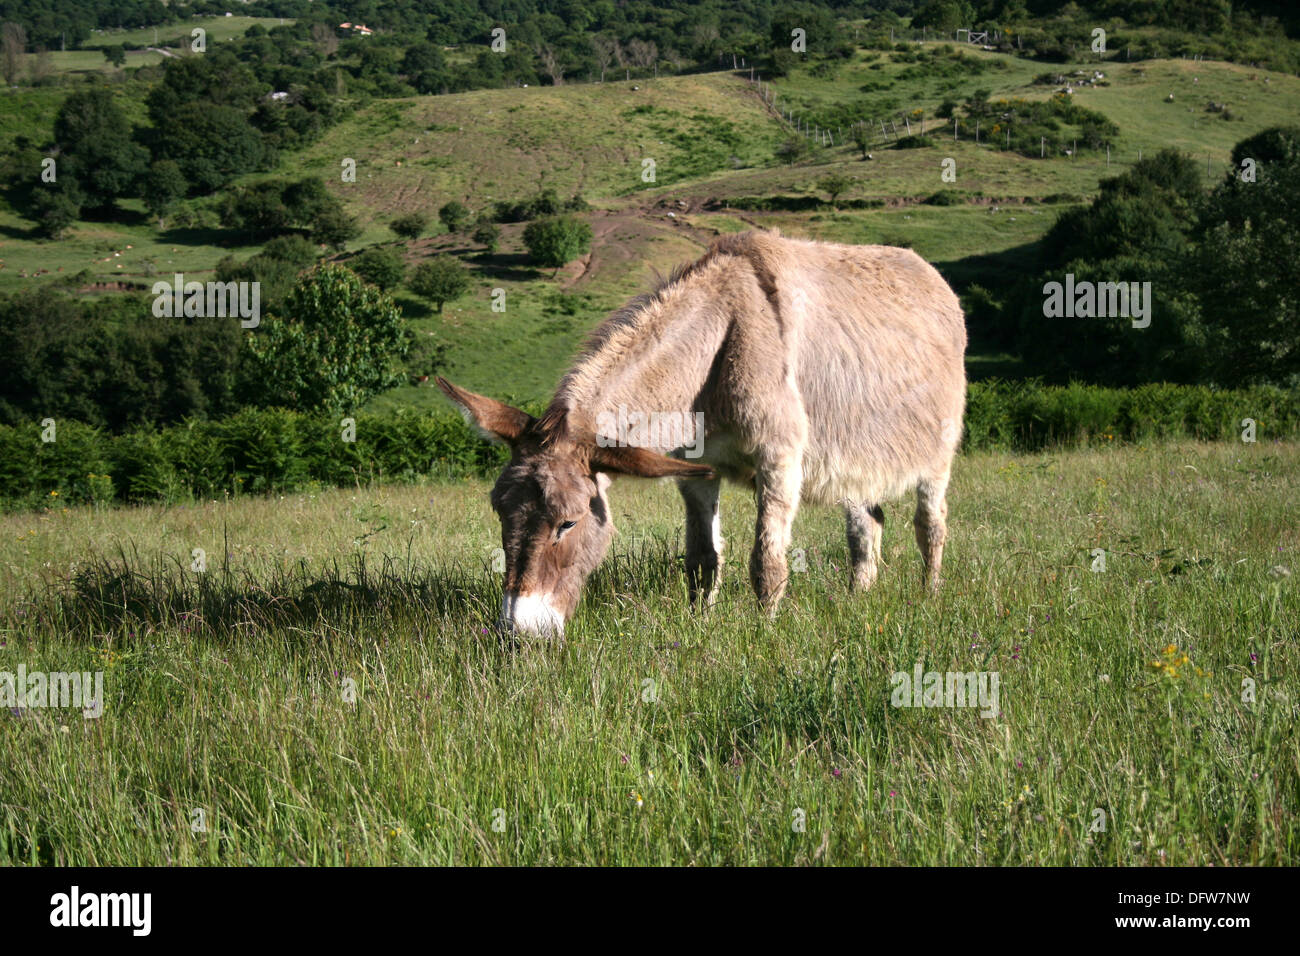 Donkey in Tuscany Stock Photo